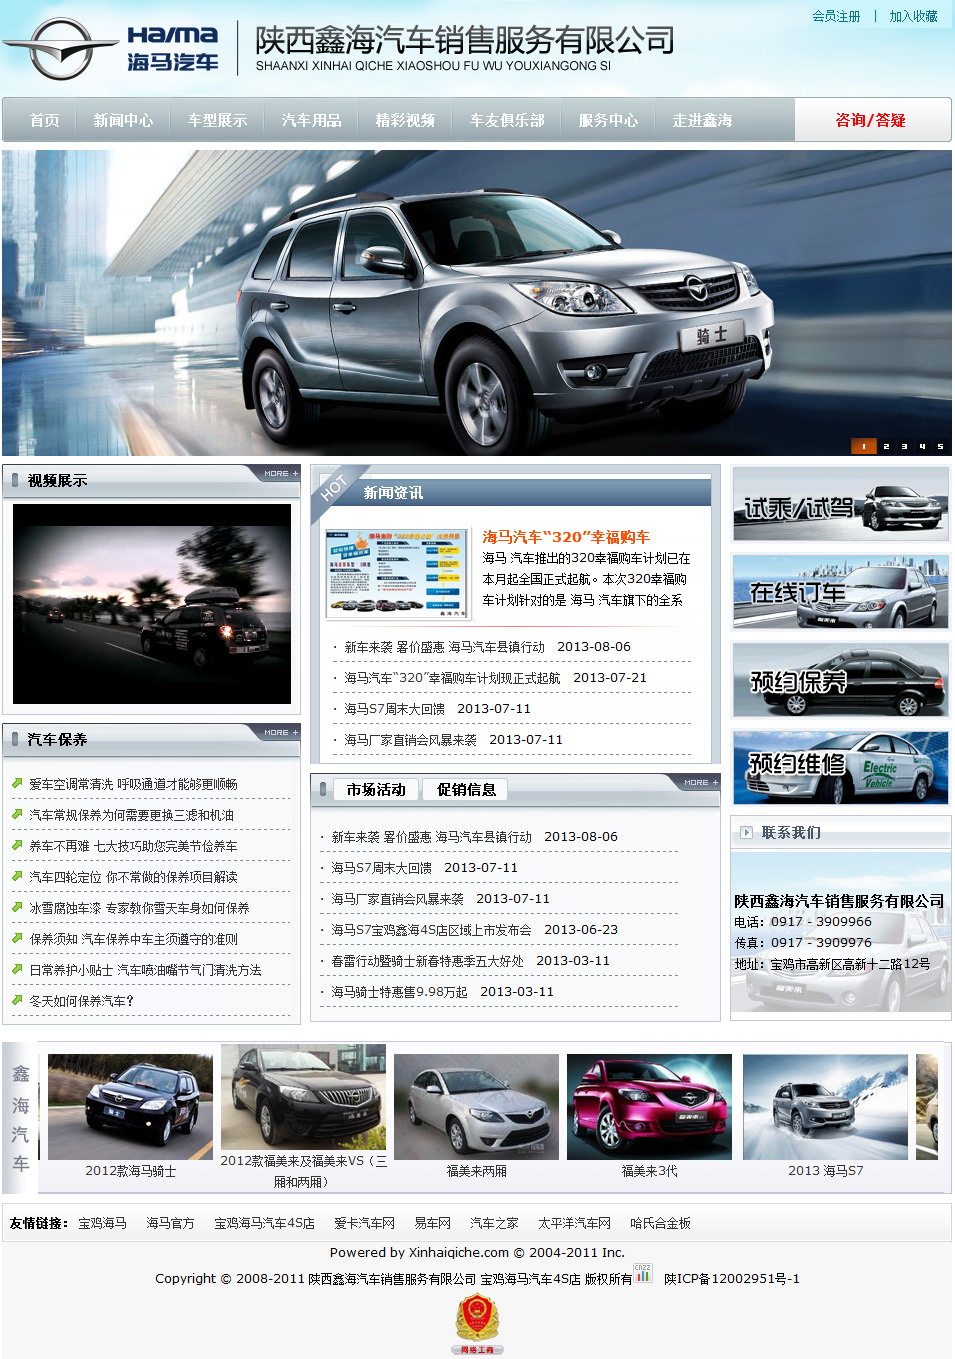 陕西鑫海汽车销售服务有限公司-服务电话0917-3909966.jpg